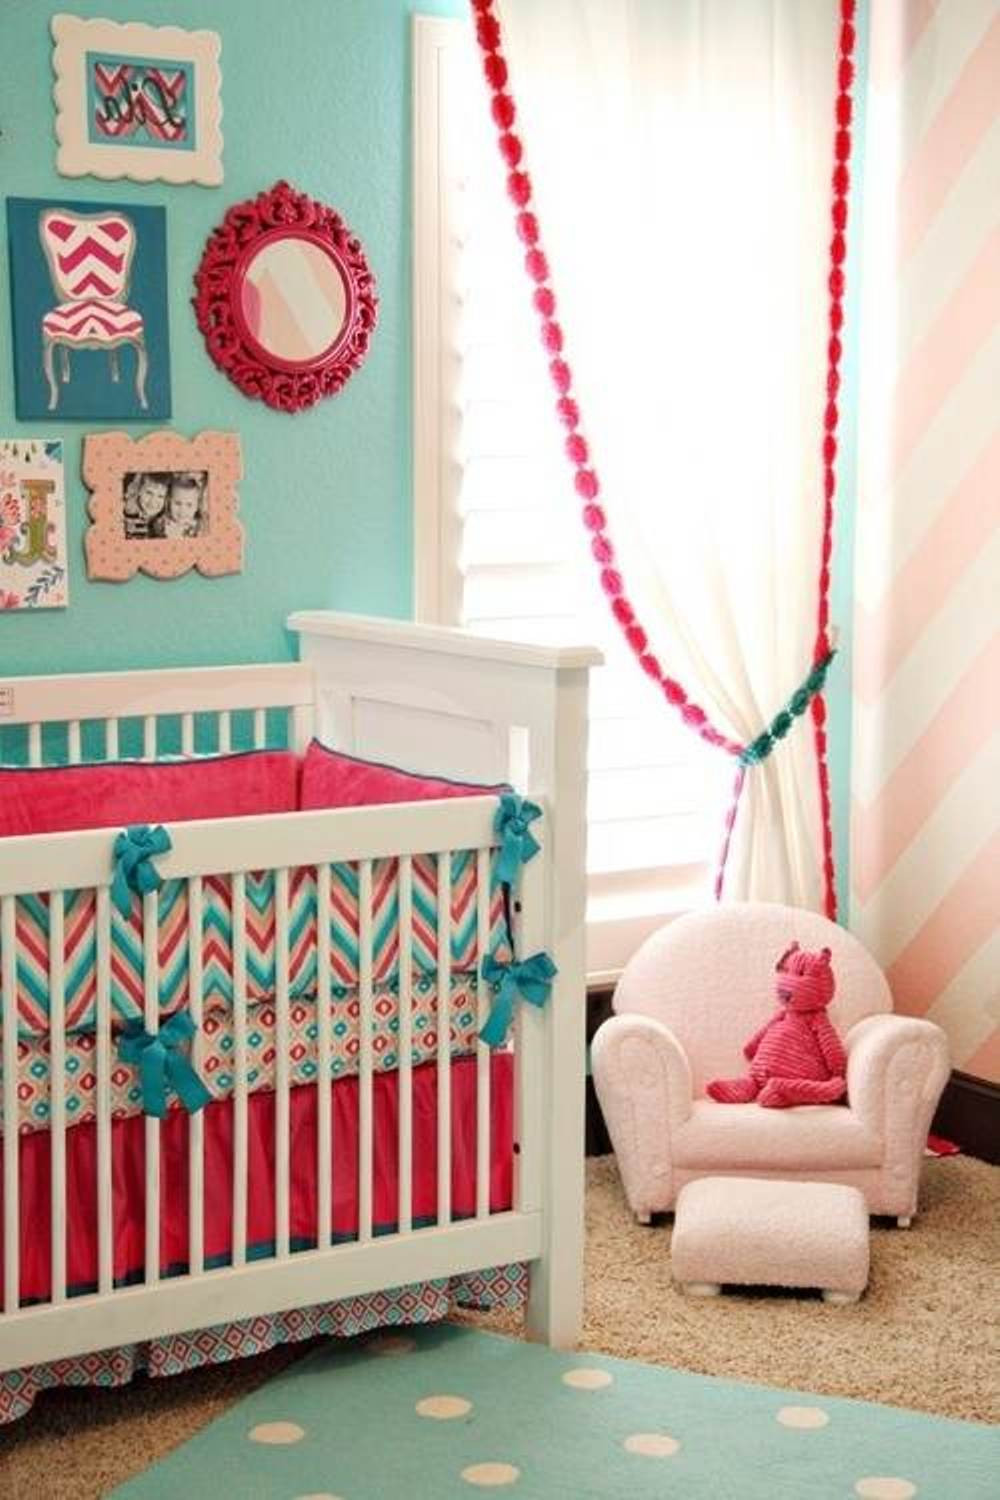 Baby Girl Bedroom Decor
 25 Baby Bedroom Design Ideas For Your Cutie Pie